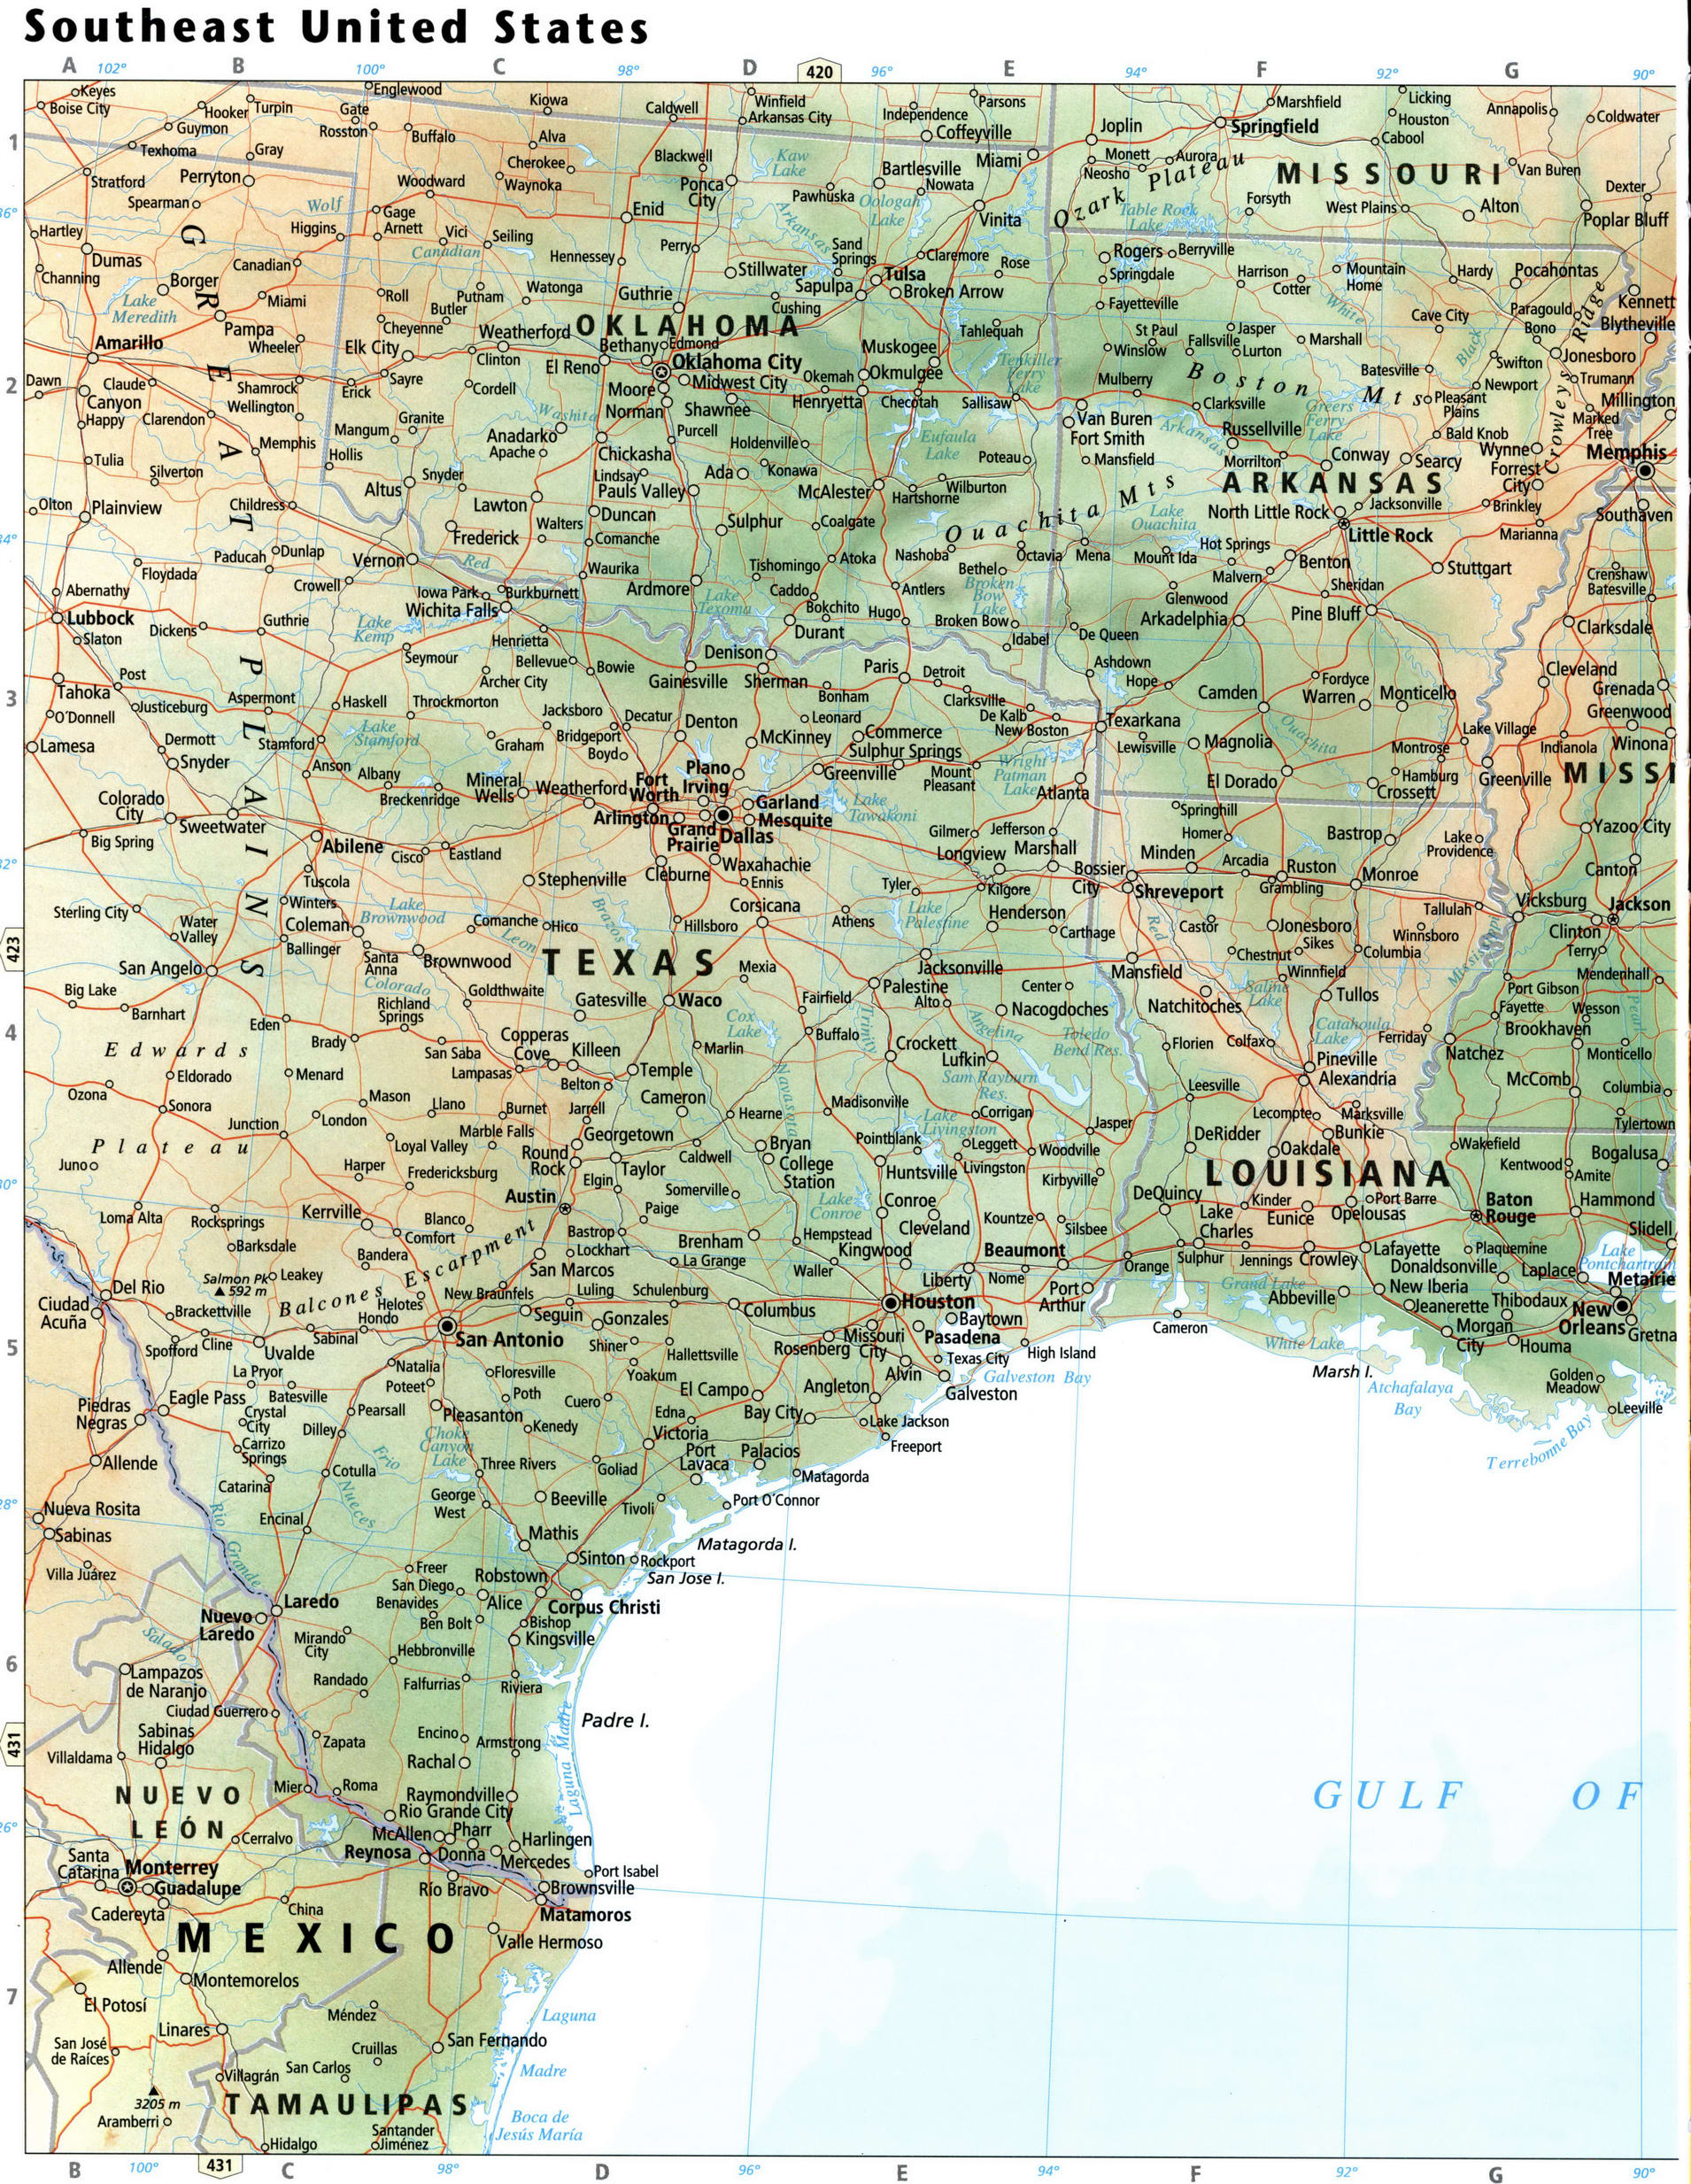 Texas and Louisiana map